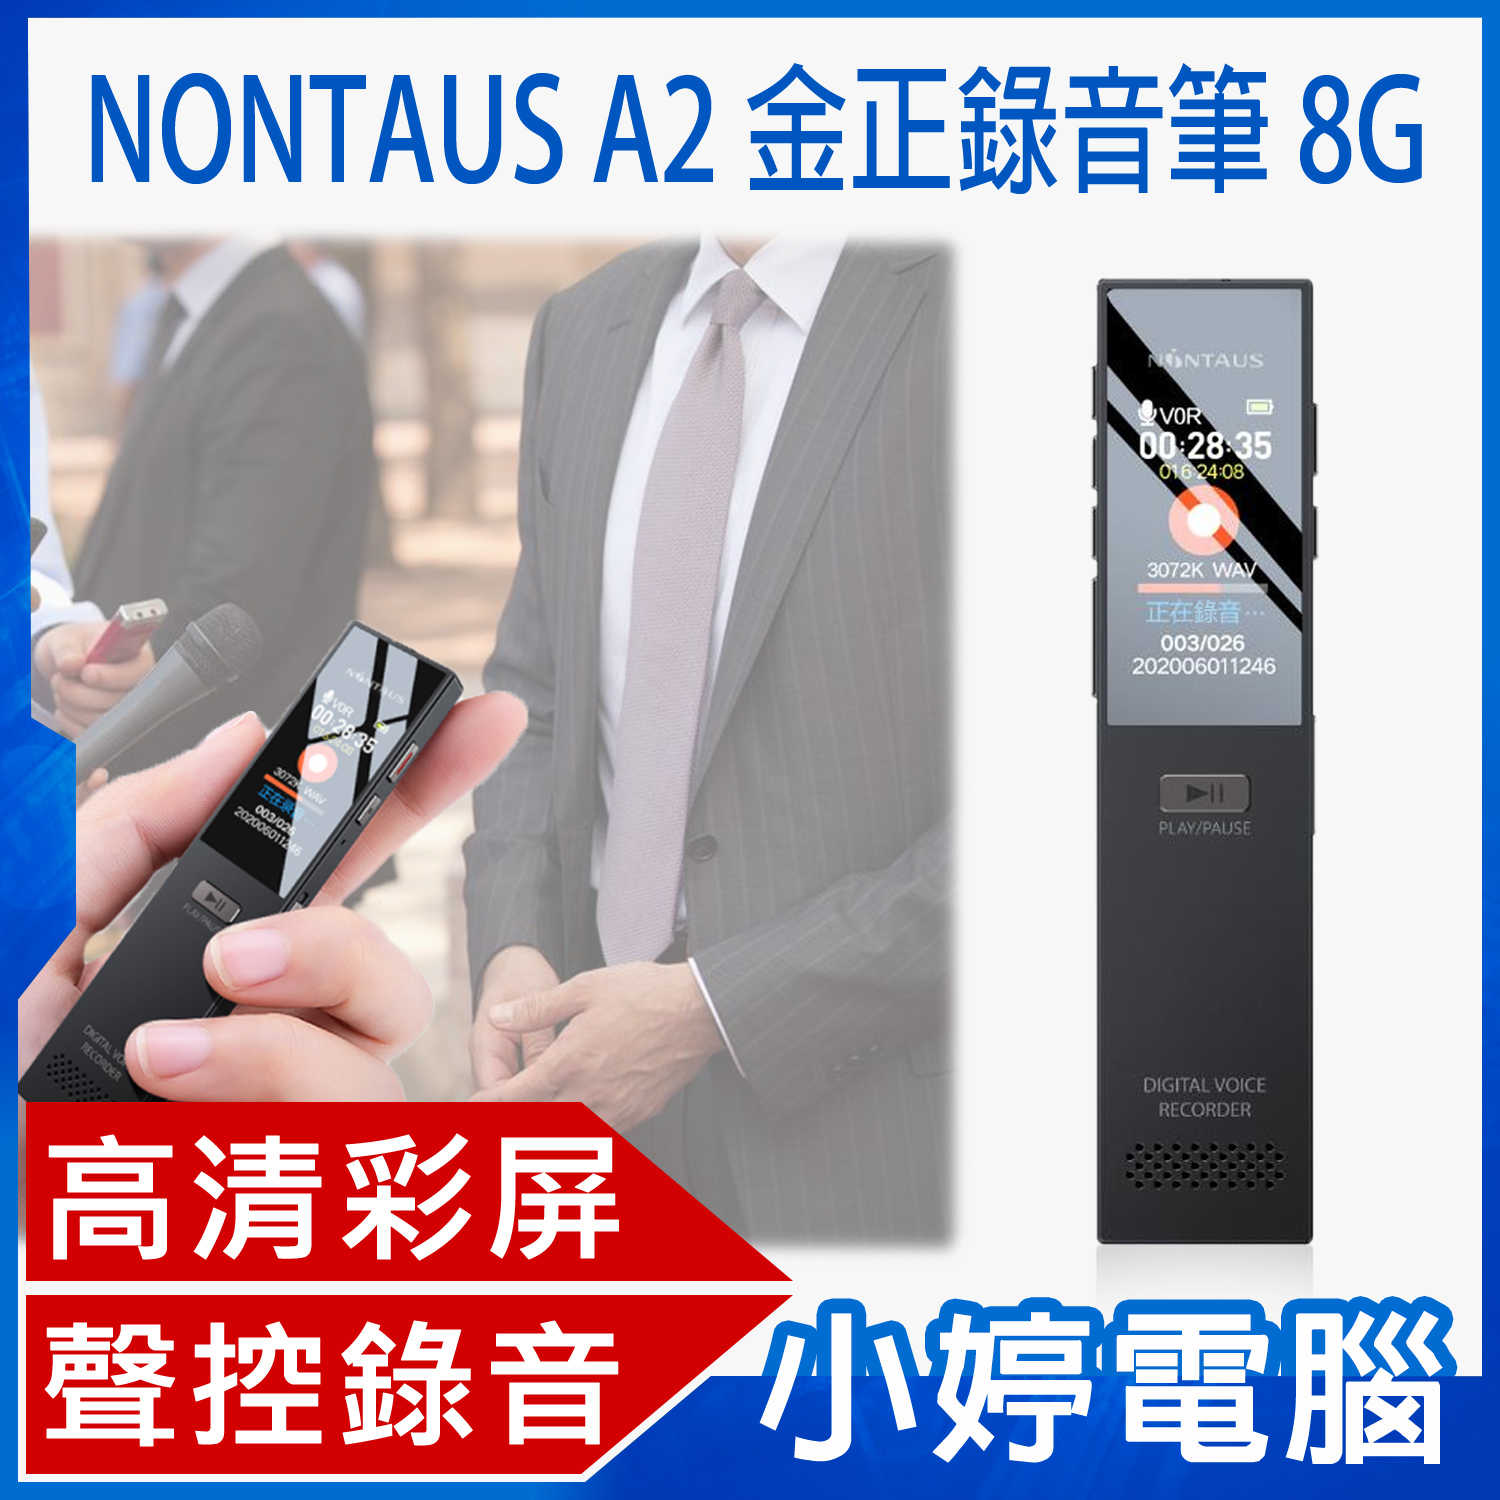 【小婷電腦】NONTAUS A2 金正錄音筆 8G 高畫質彩屏 聲控錄音 遠距錄音 無損音質 輕薄便攜